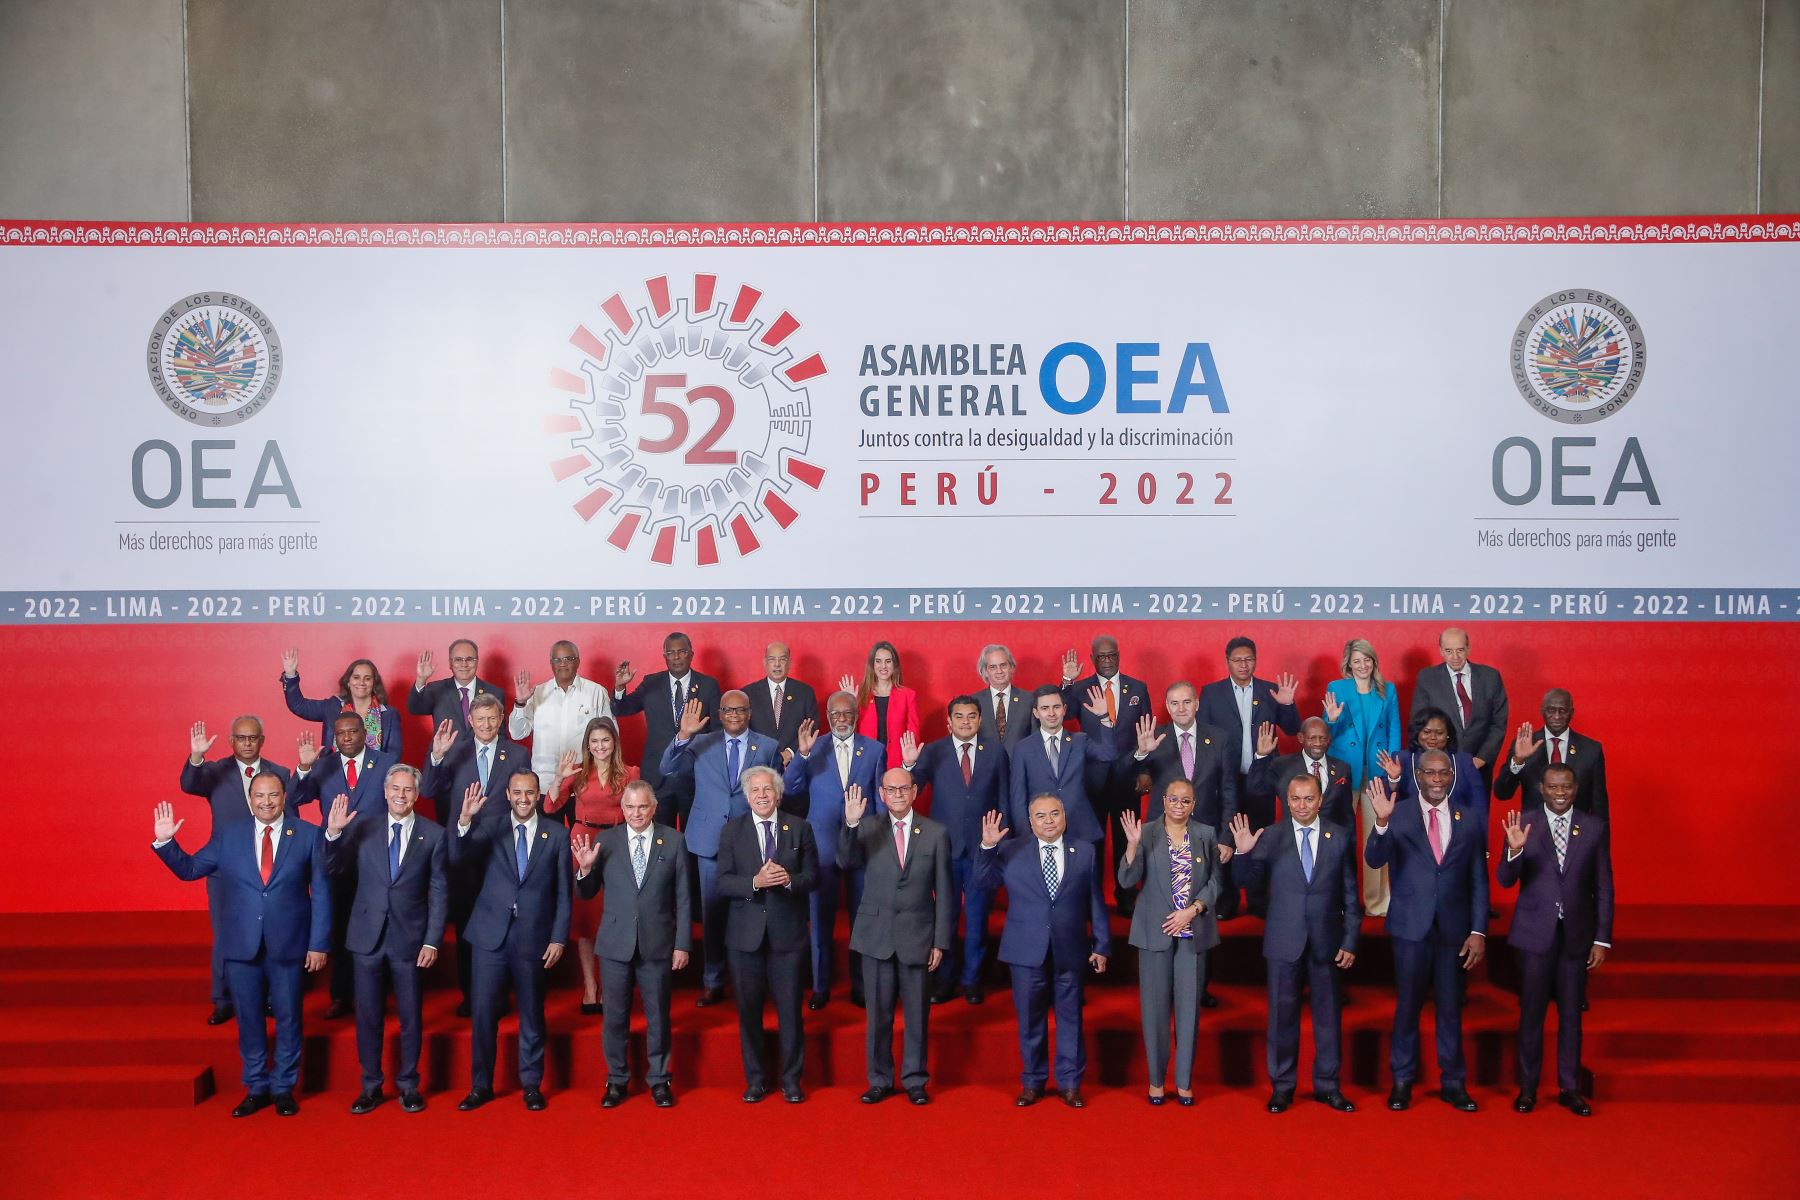 Los miembros de los países integrantes de la OEA, posan para la fotografía oficial, que se realizó en la explanada del Centro de Convenciones de Lima. 

Foto: ANDINA/Renato Pajuelo